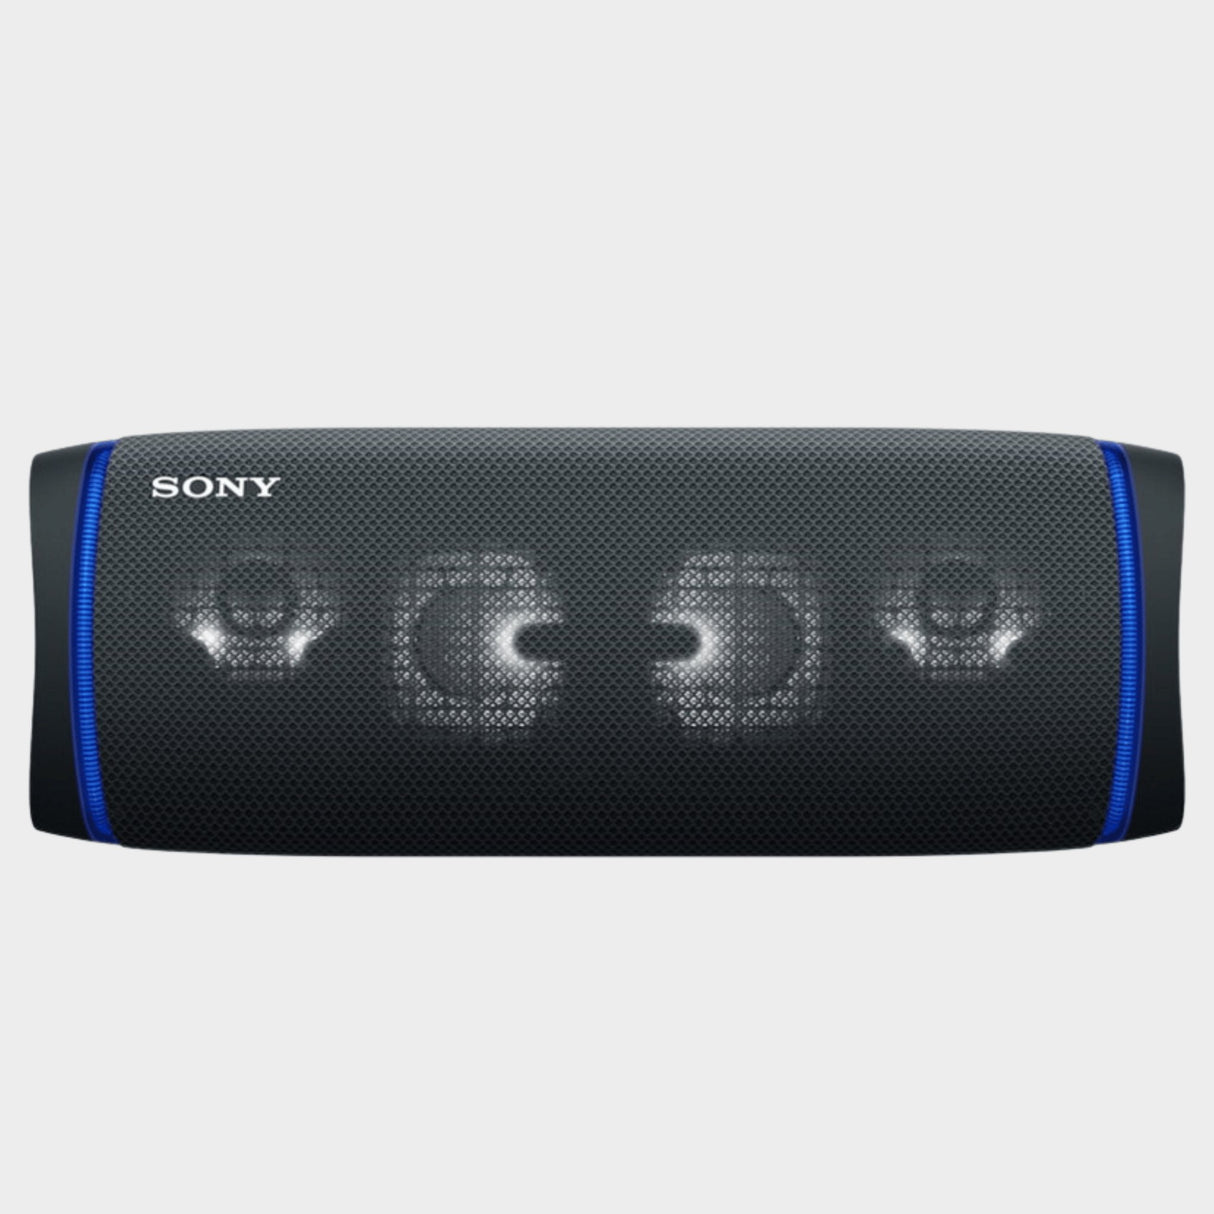 Sony Bluetooth Water Proof Speaker SRSXB43 - Black - KWT Tech Mart